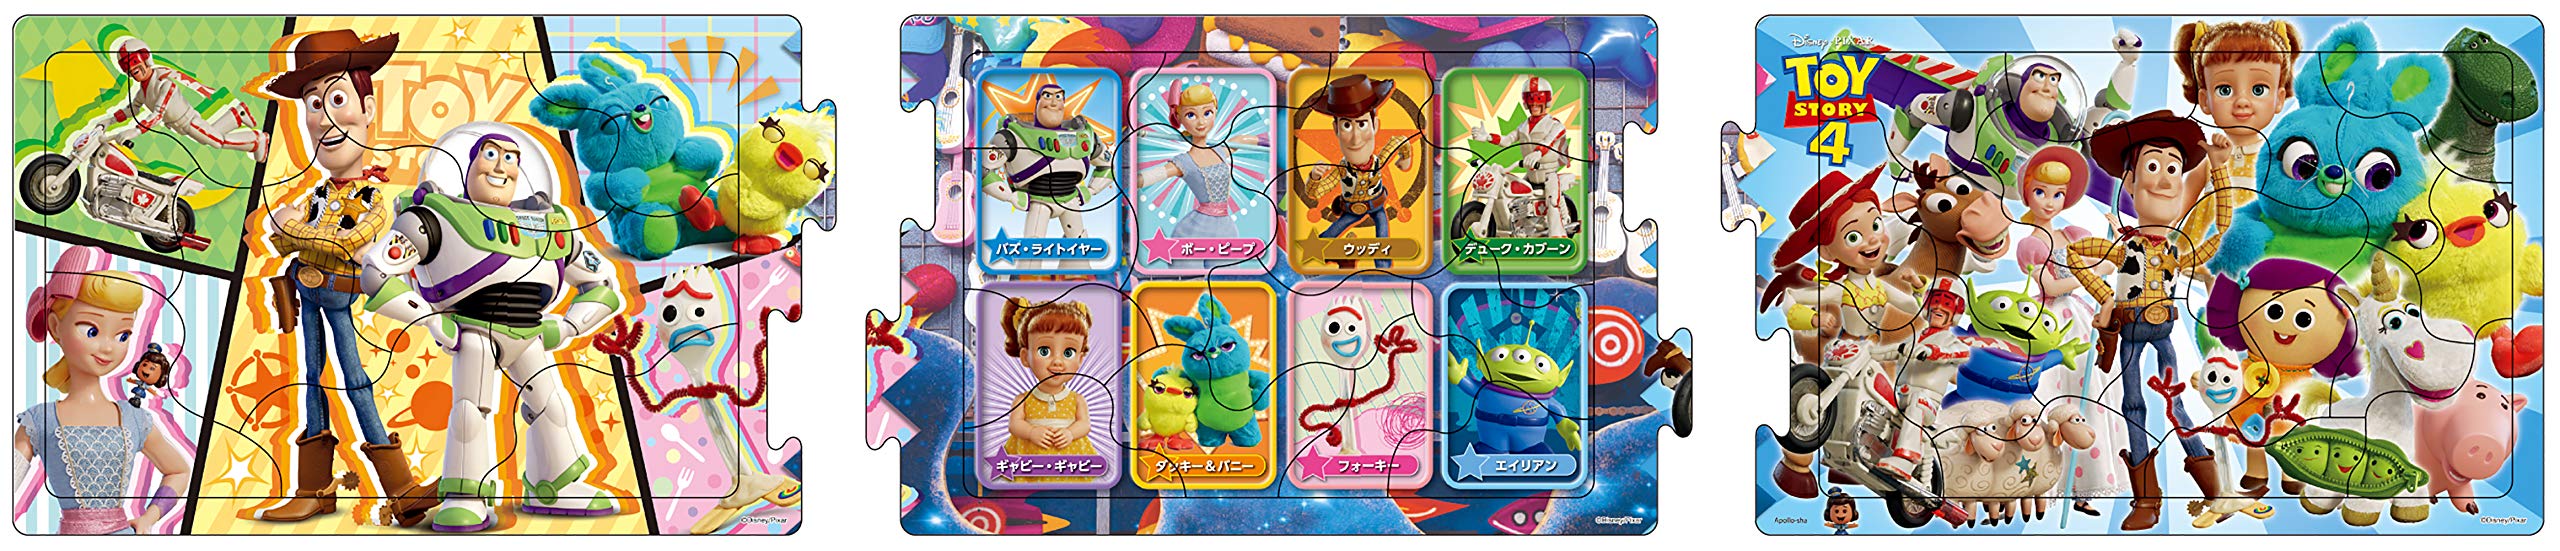 10+15+20 Teile Puzzle für Kinder Schritt 2 Toy Story4 Toy Story 4 [Schritt-Panorama-Puzzle]